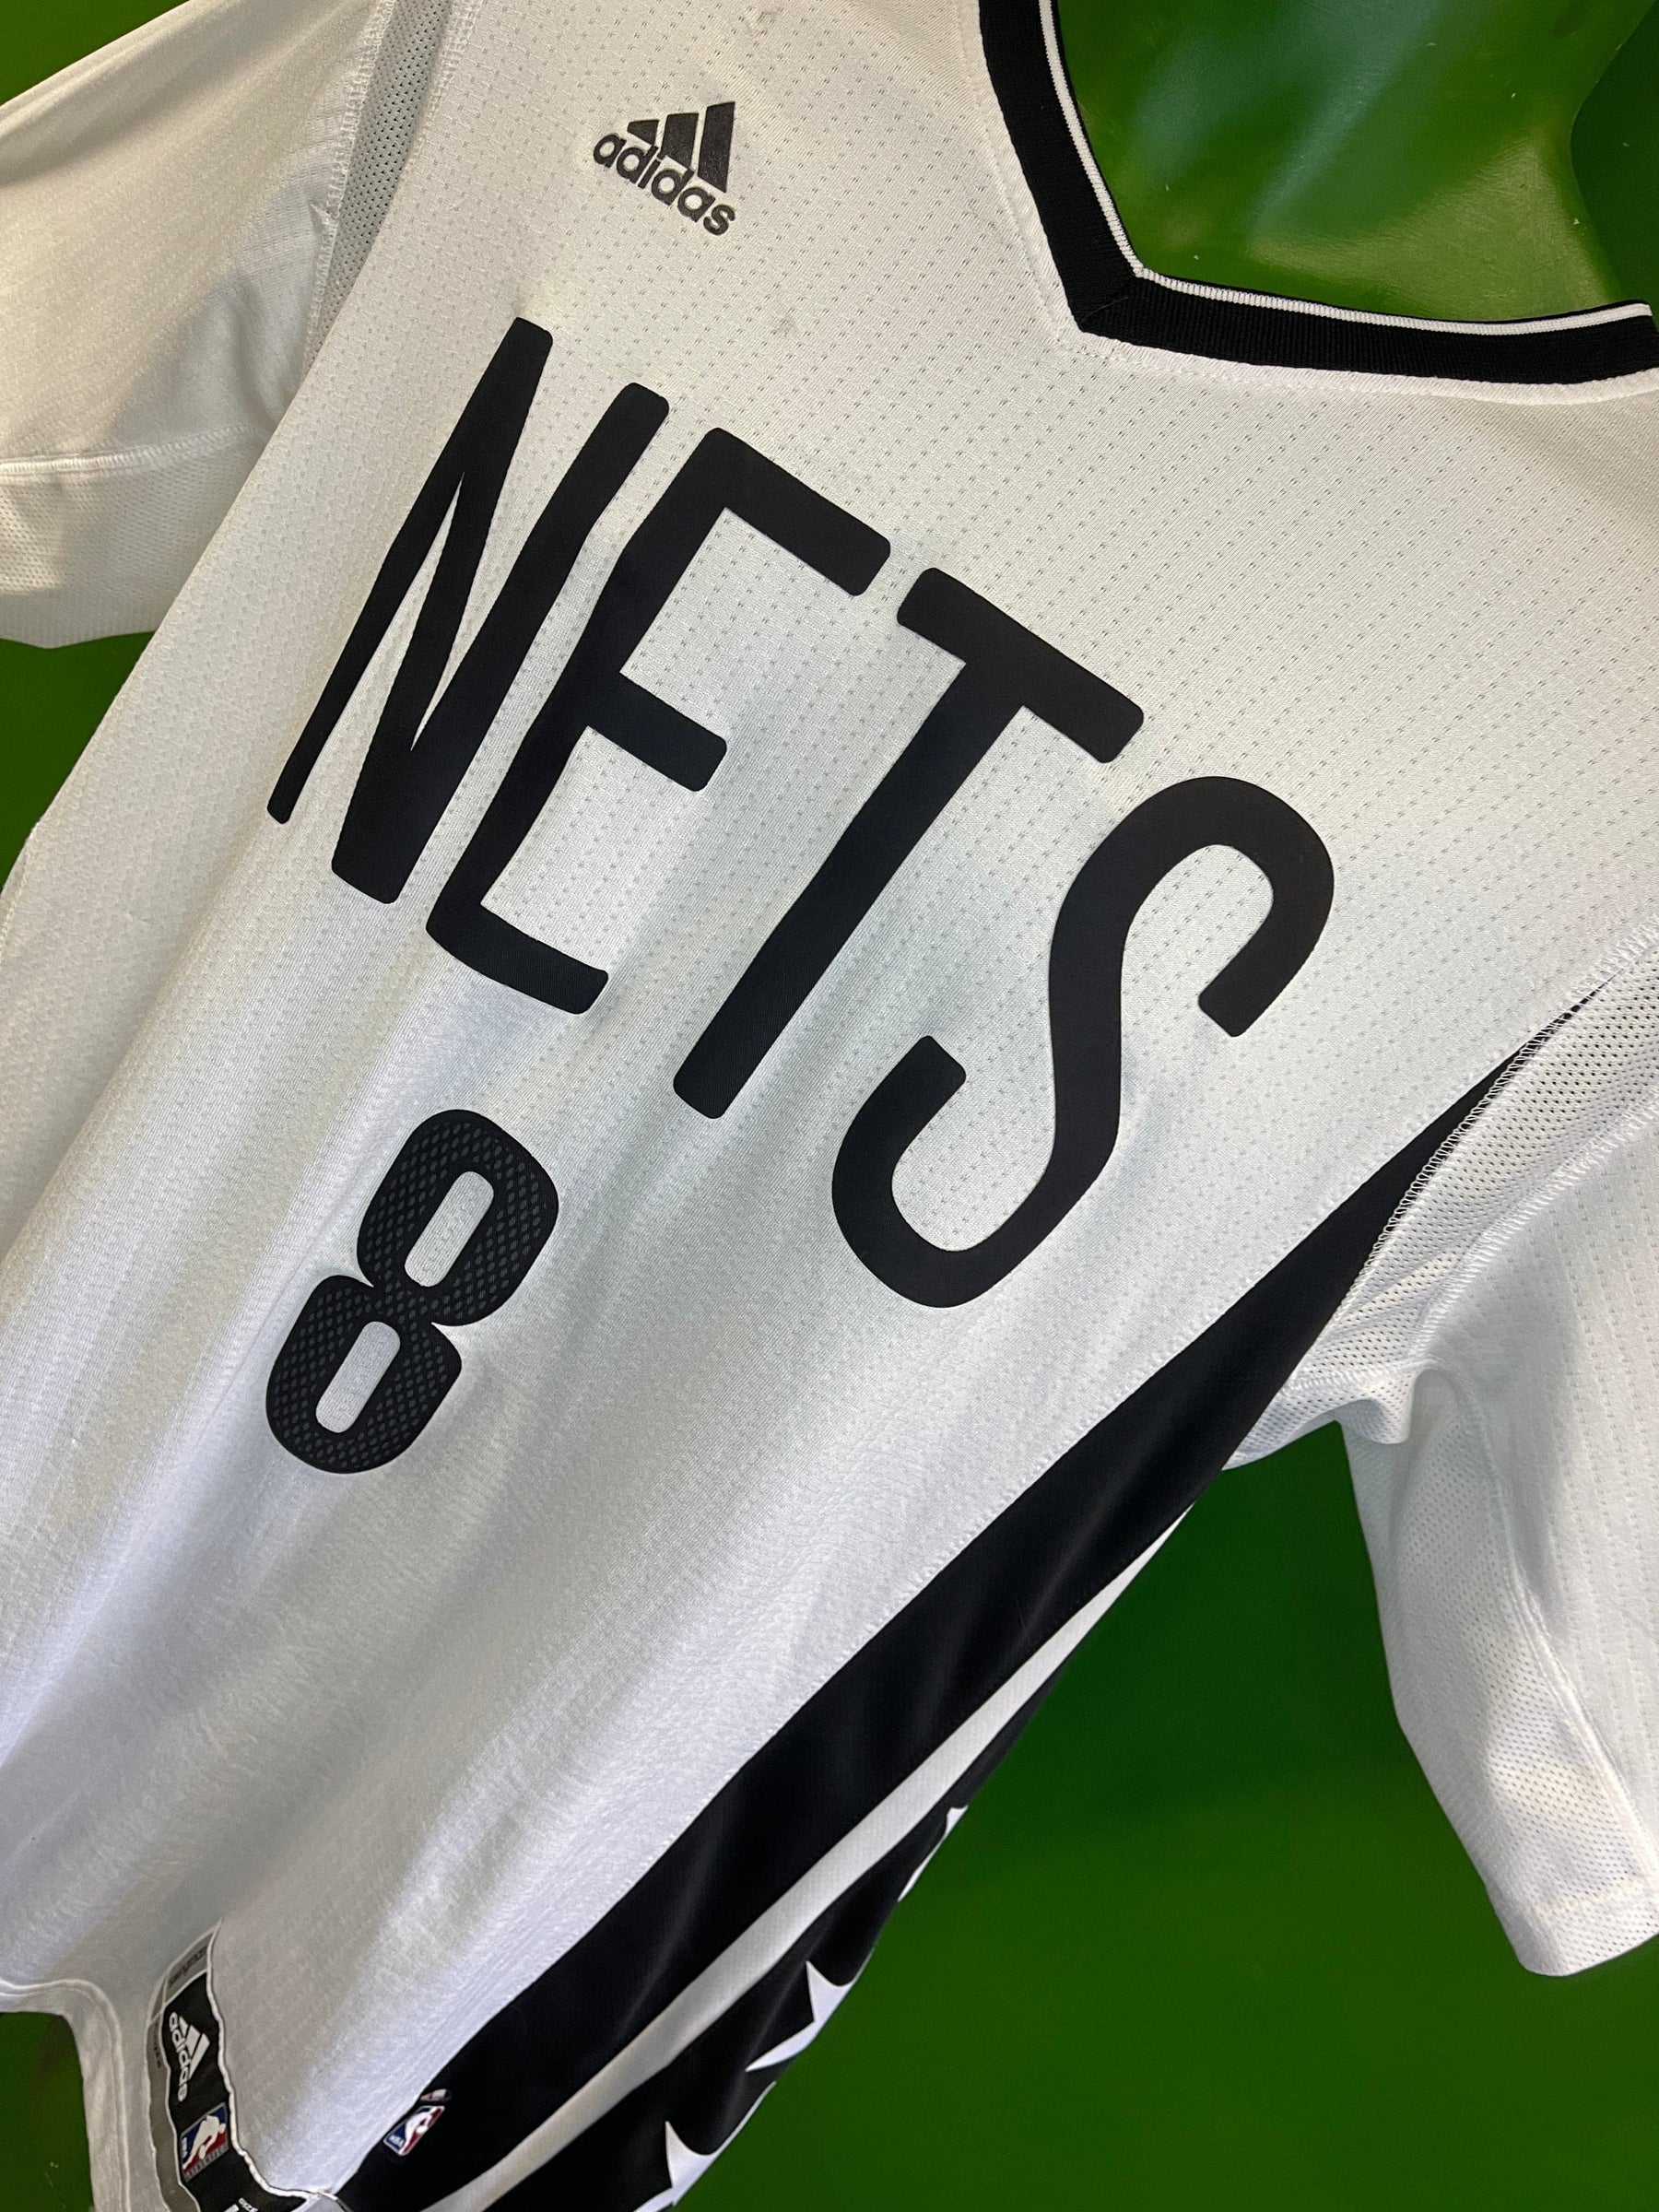 NBA Brooklyn Nets Deron Williams #8 Swingman +2" Length Jersey Men's Large